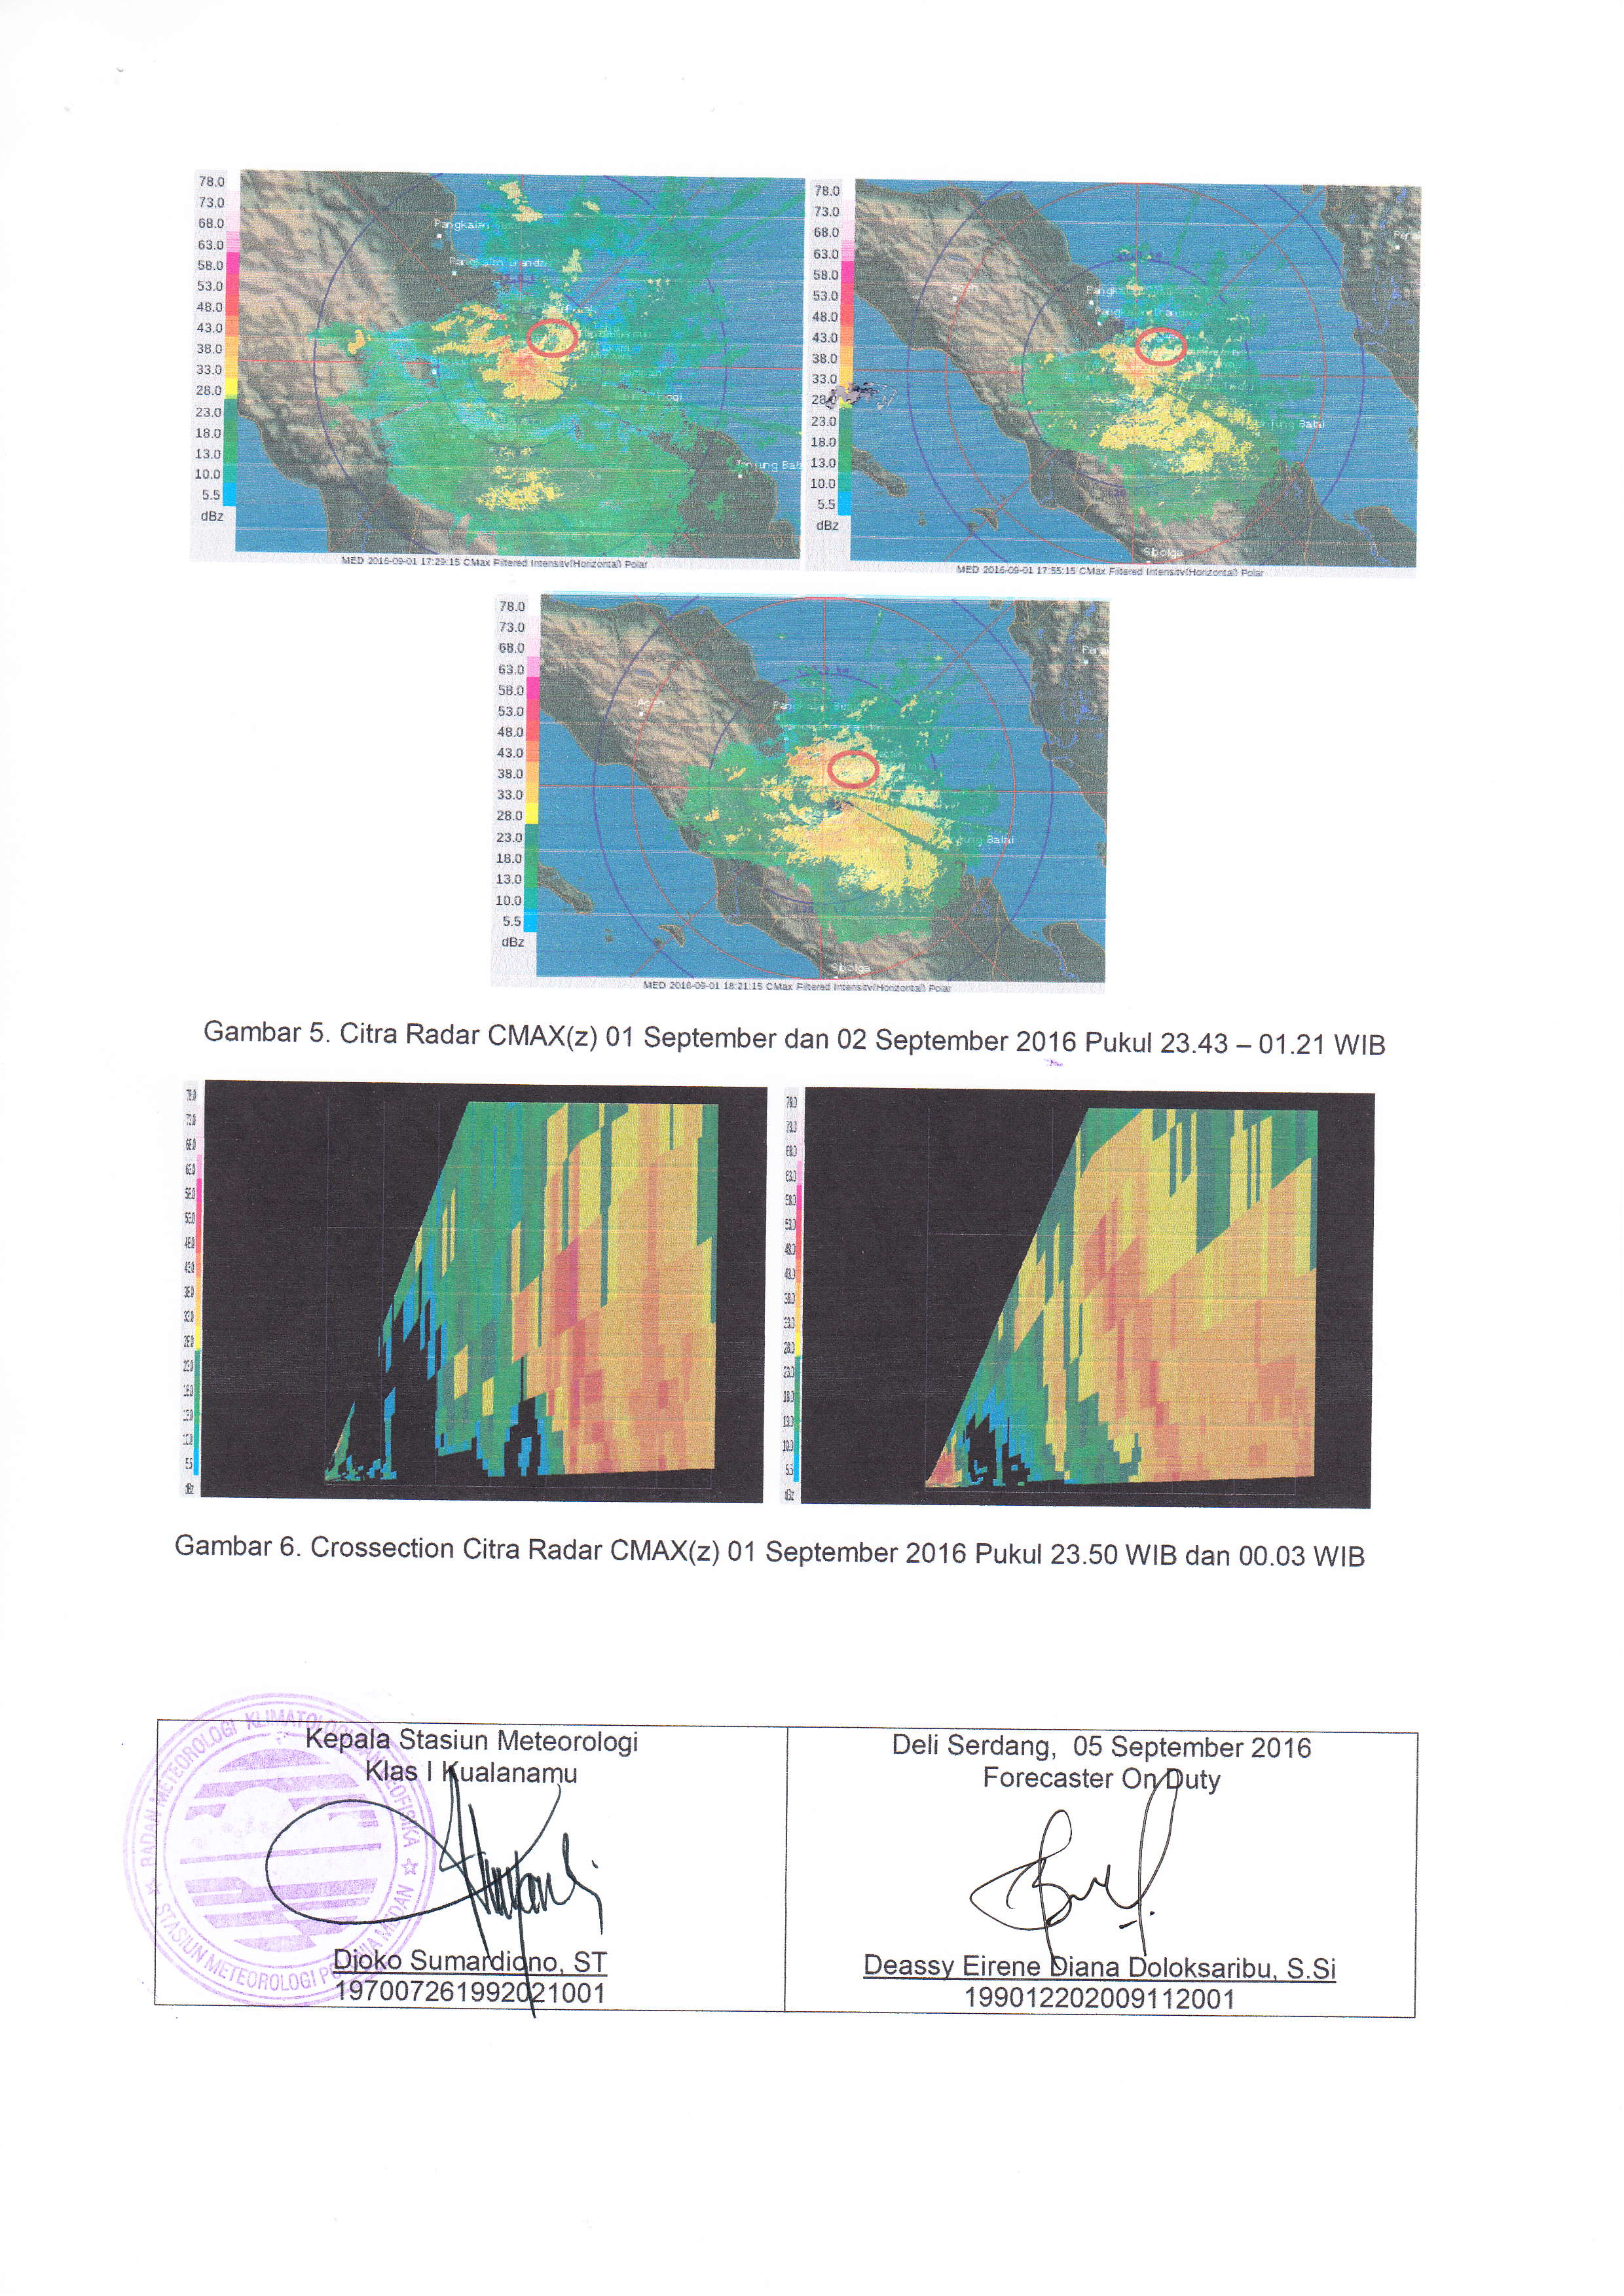 Gambar 5. Citra Radar CMAX(z) 01 September dan 02 September 2016 pukut 23.43-01.